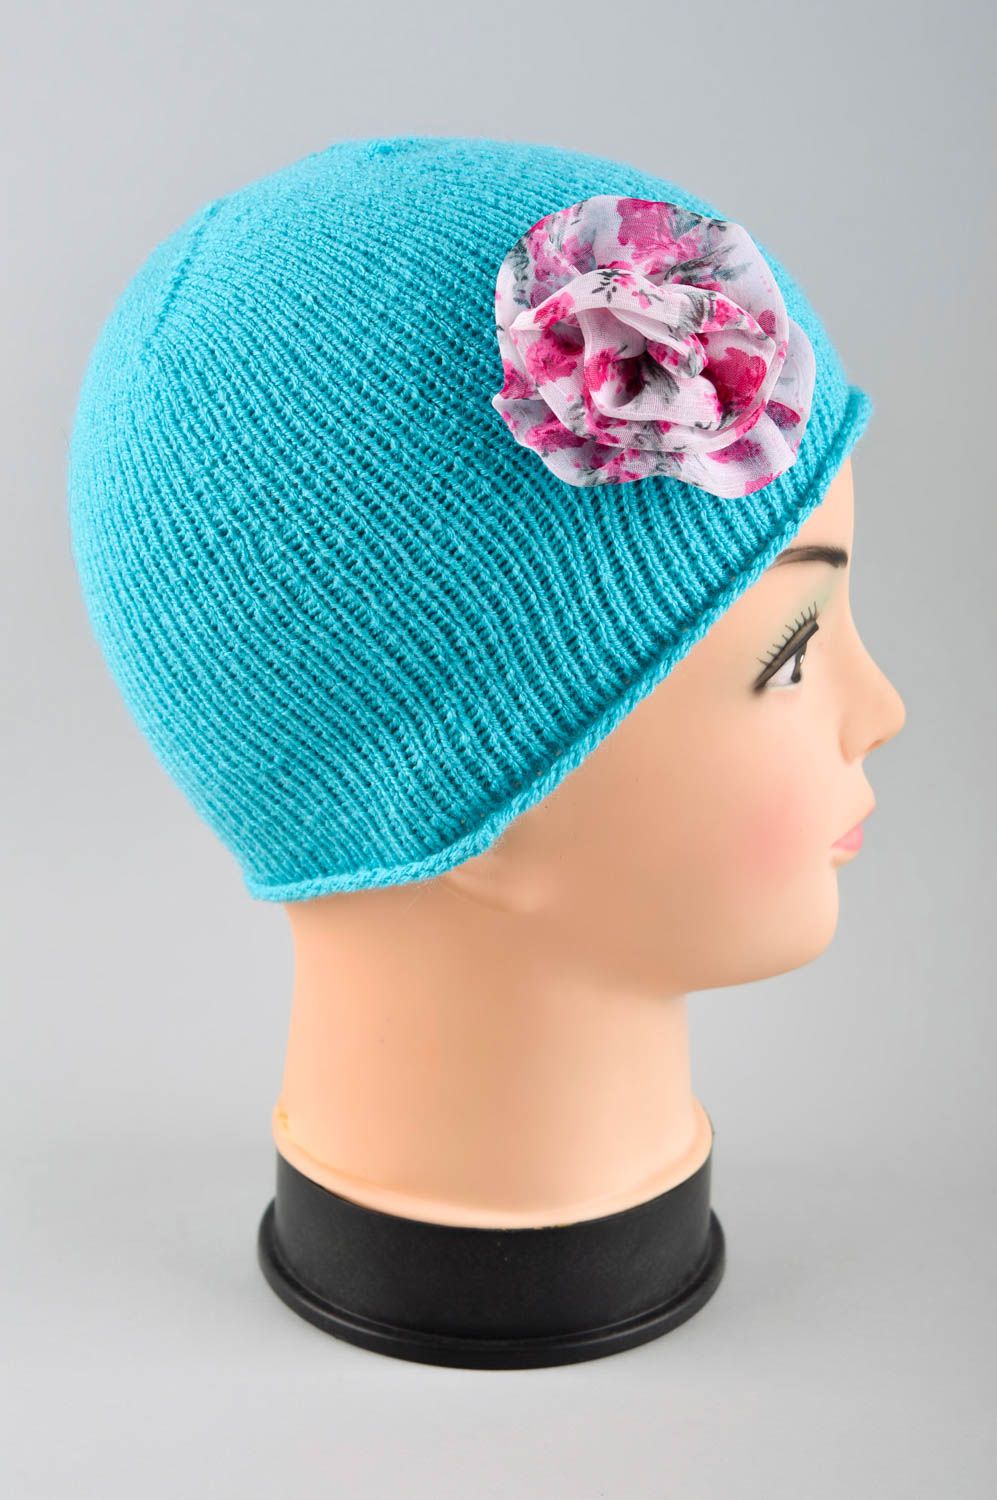 Шапка для девочки ручной работы вязаная шапка голубая зимняя шапка с цветком фото 3